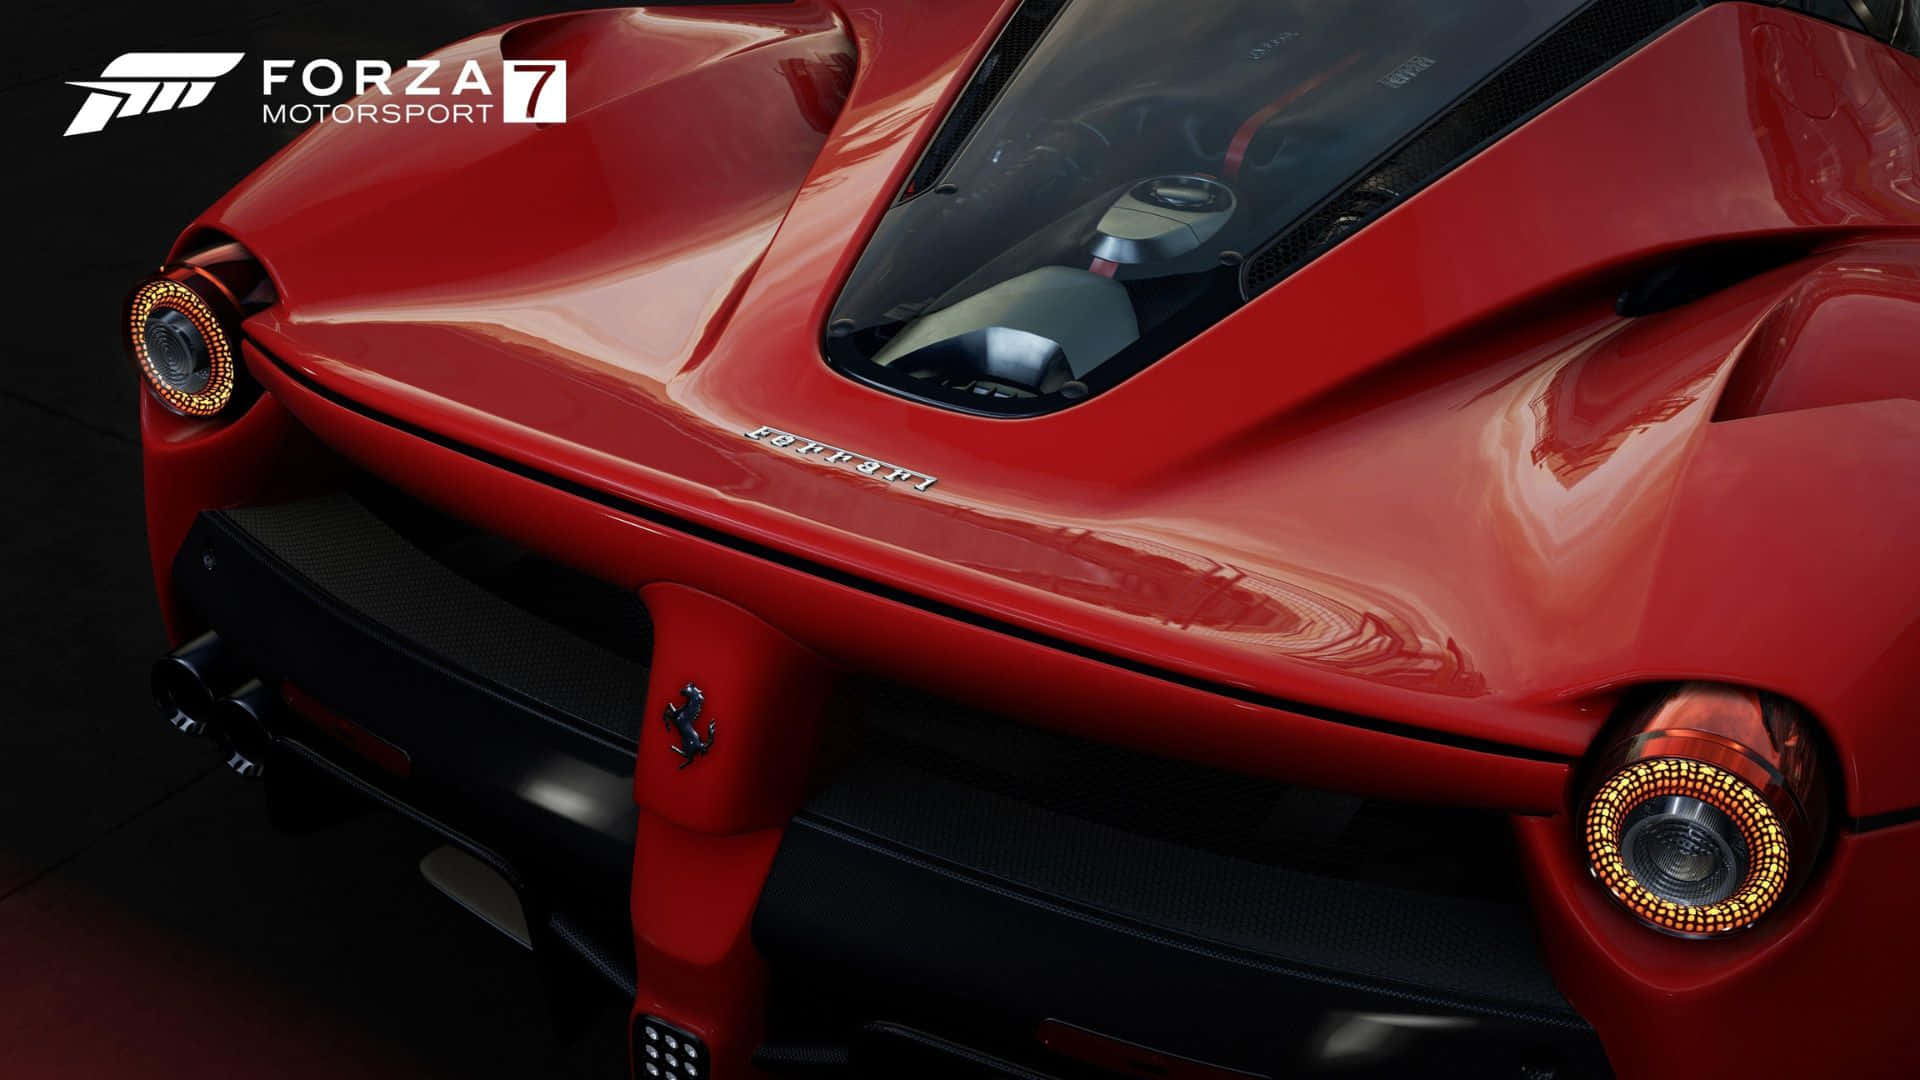 Hdbakgrundsbild För Forza Motorsport 7 Med Ferrari Laferrari.